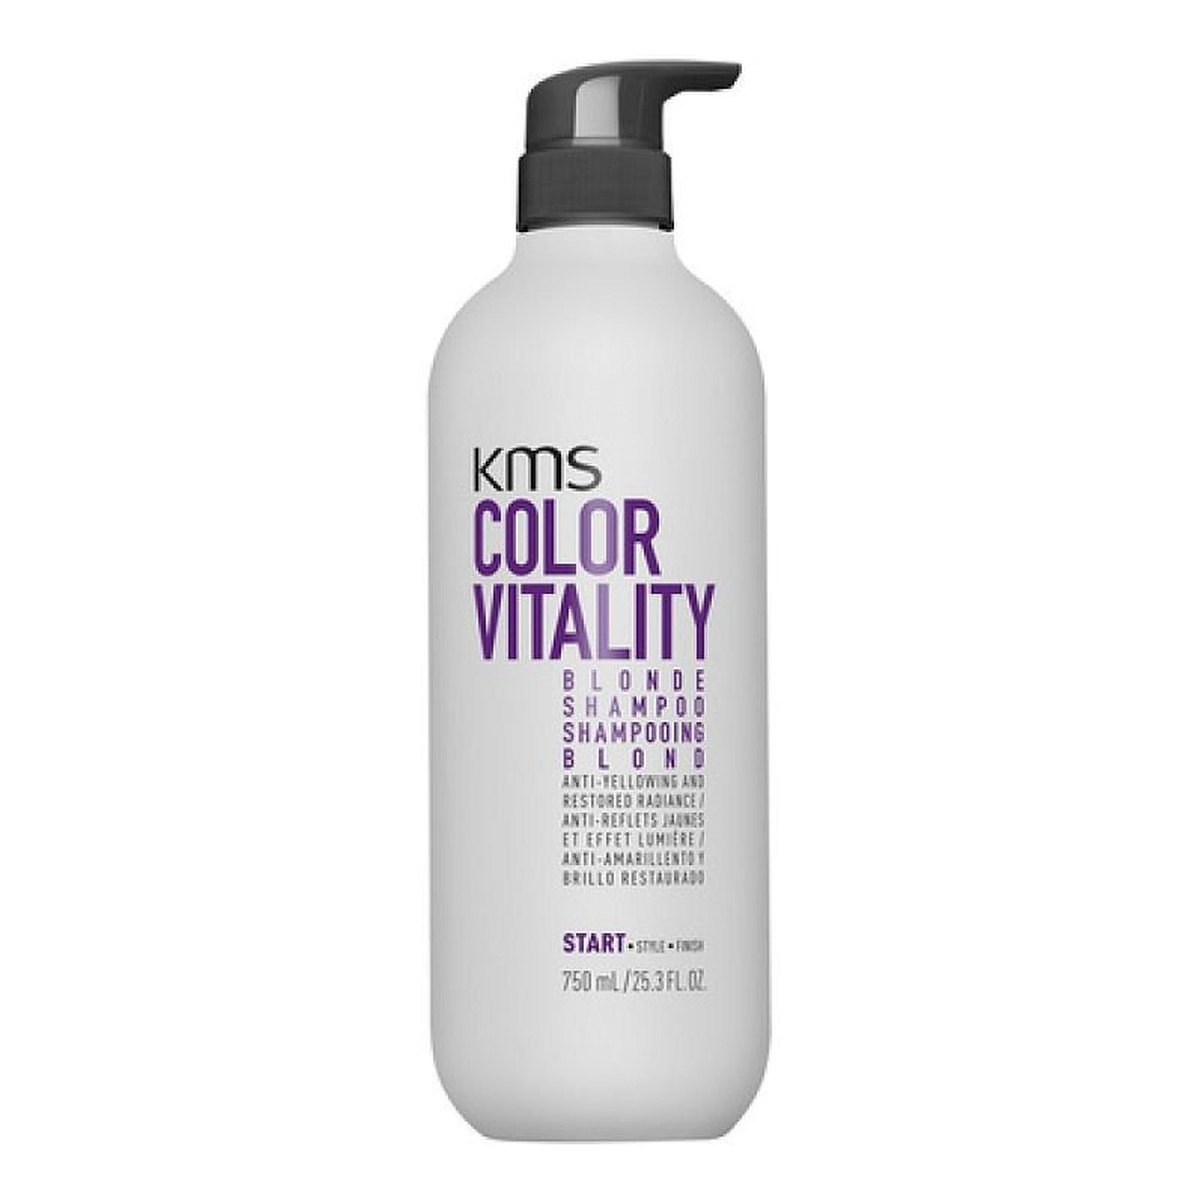 KMS California Color Vitality Blonde Shampoo szampon do włosów blond niwelujący żółty odcień 750ml